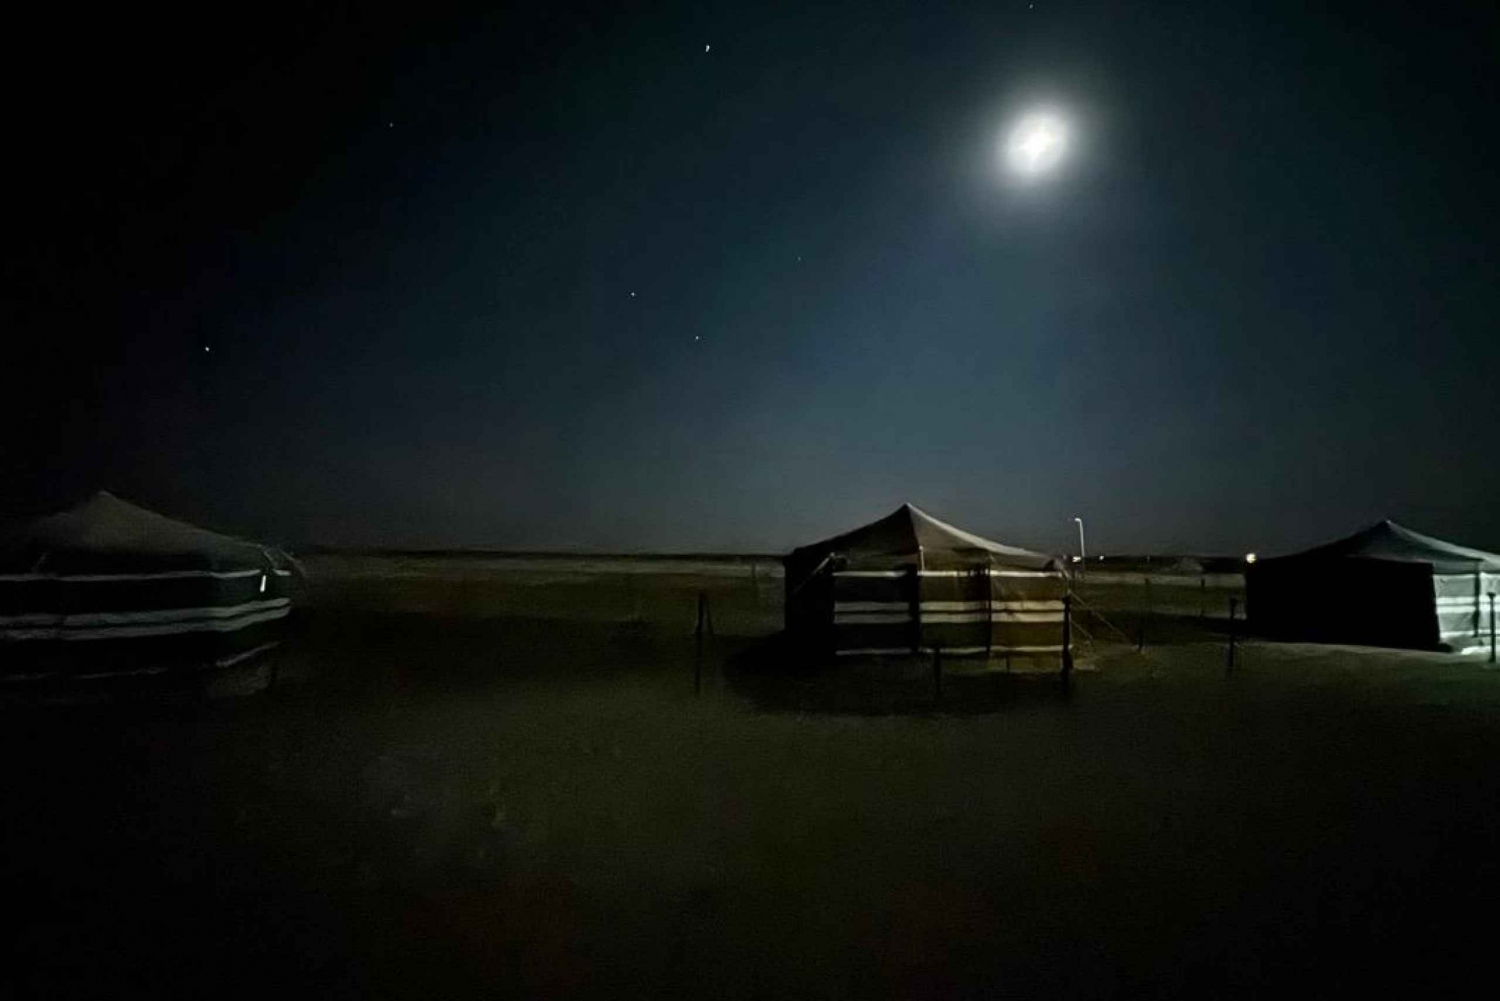 Gwiazdy i piasek: Magiczna noc na pustyni